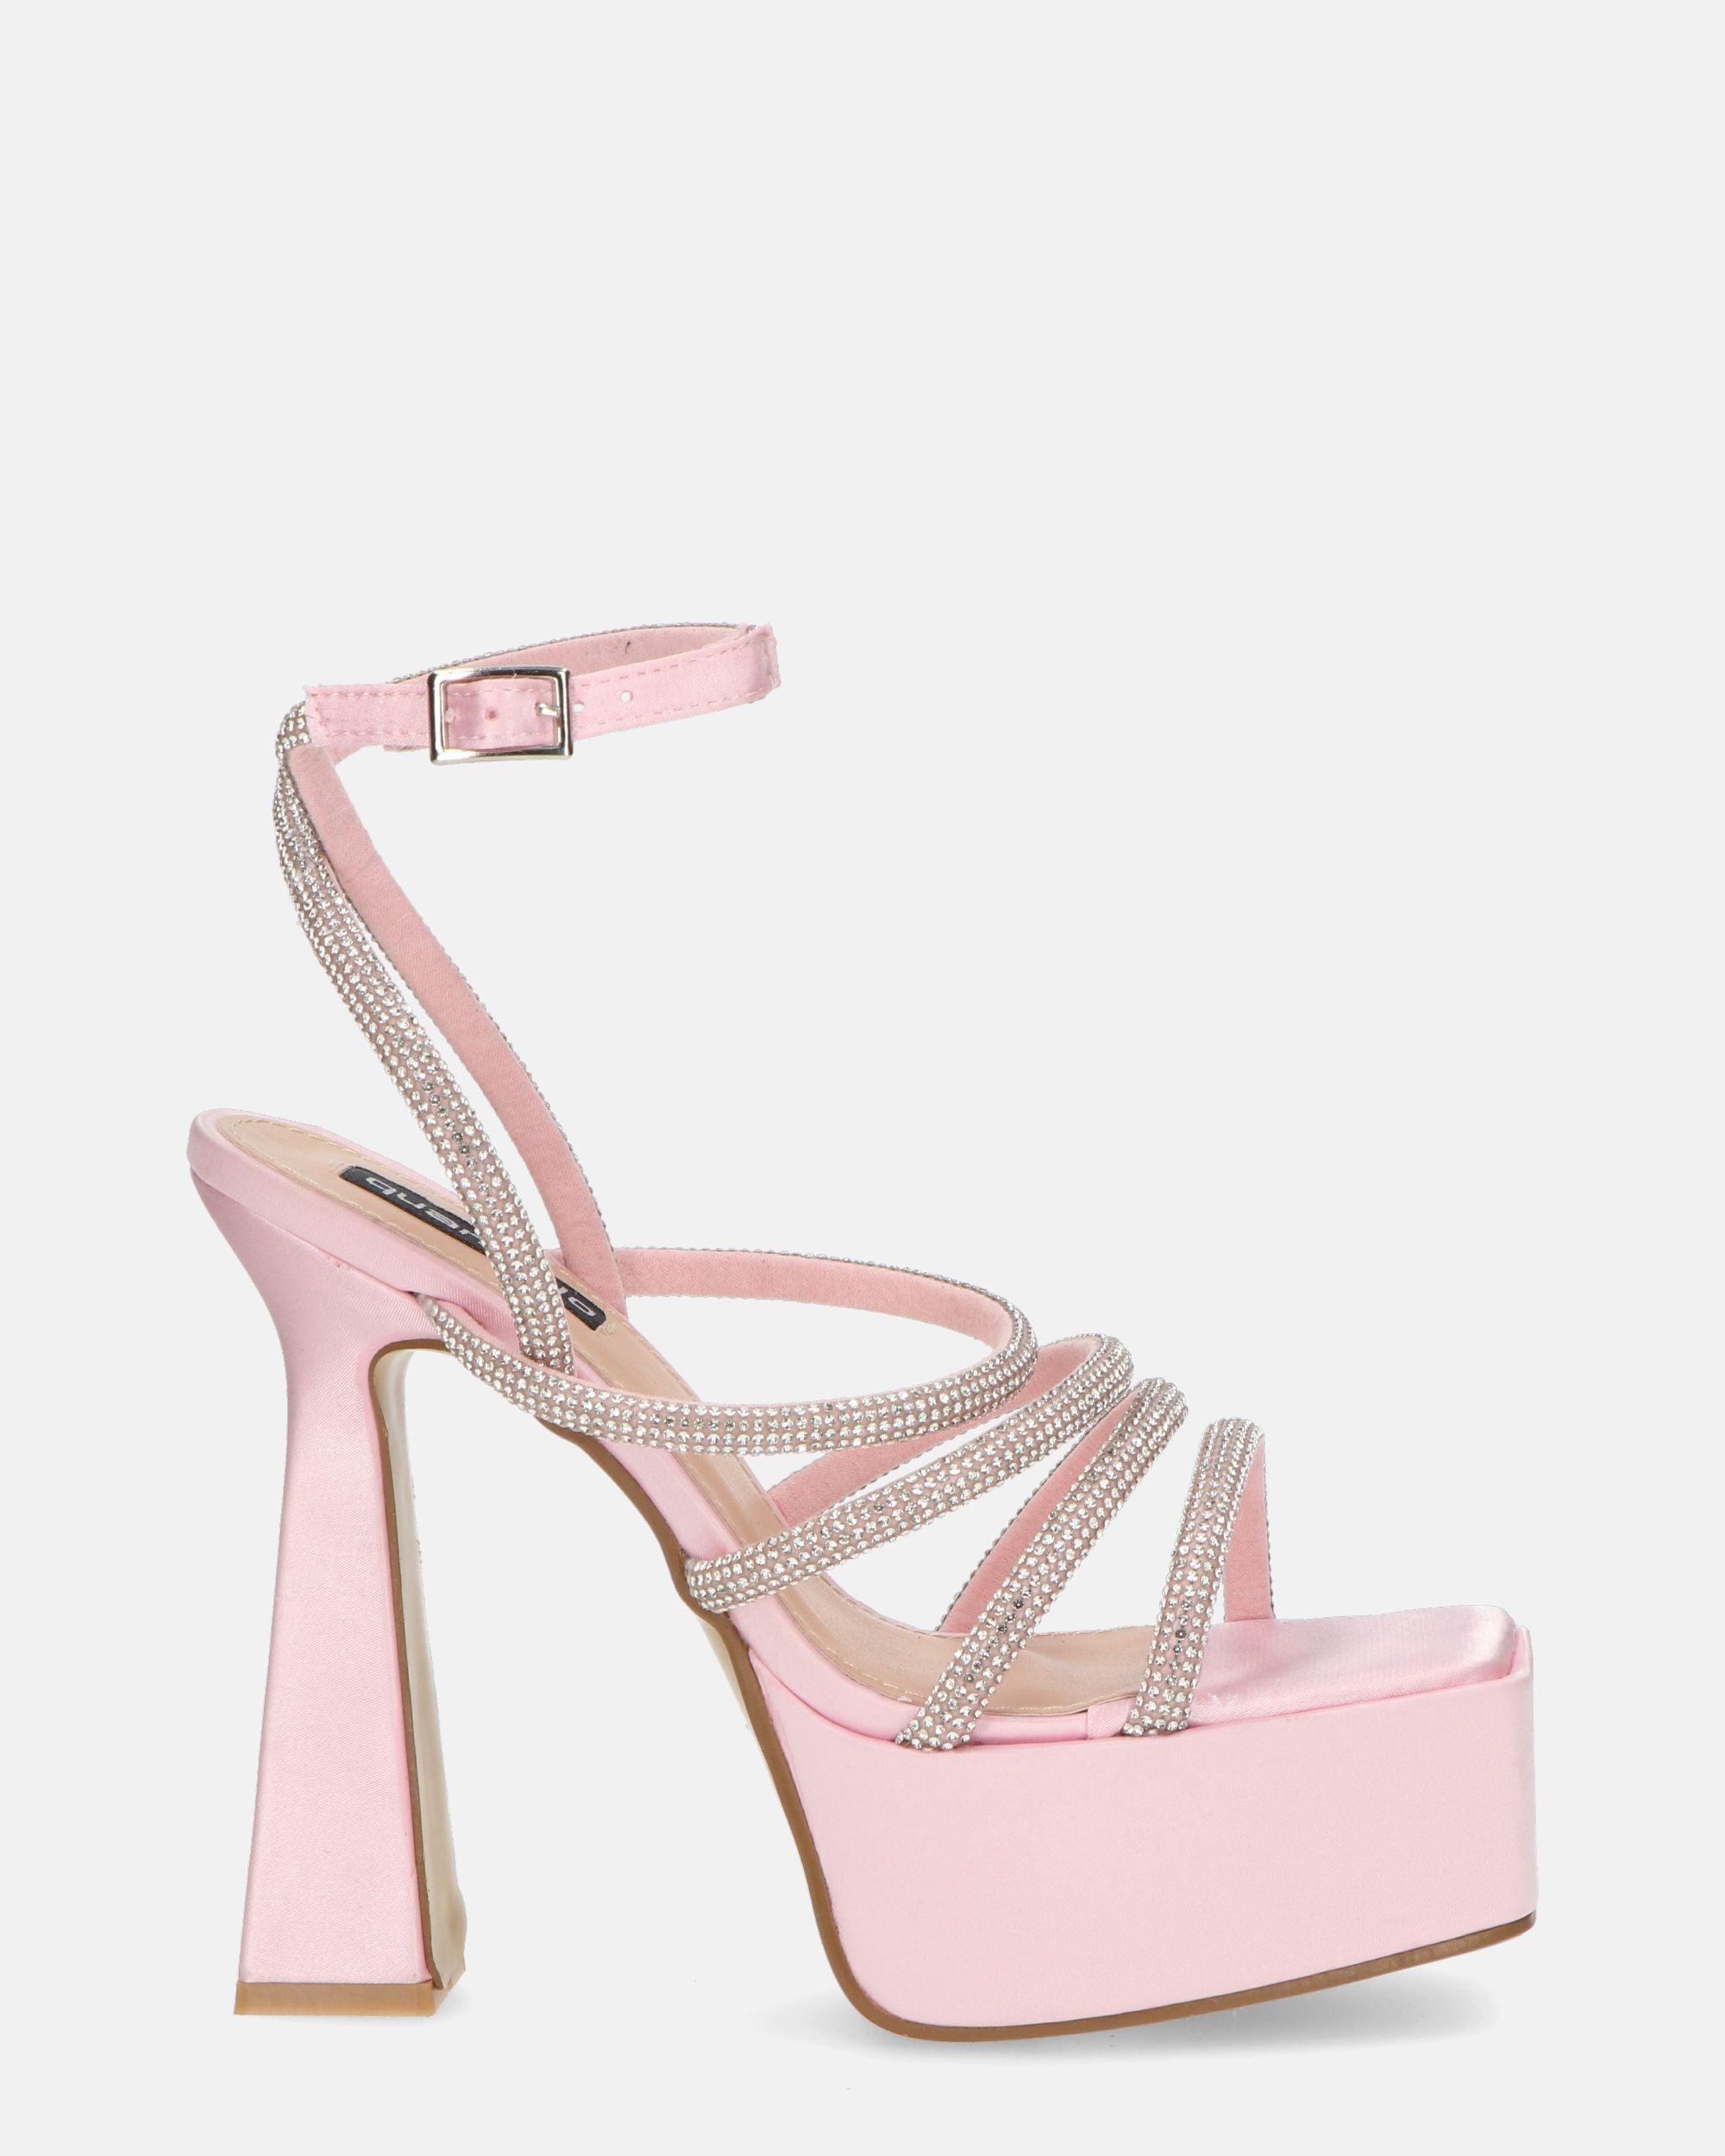 MADELYN - sandali in lycra rosa con gemme